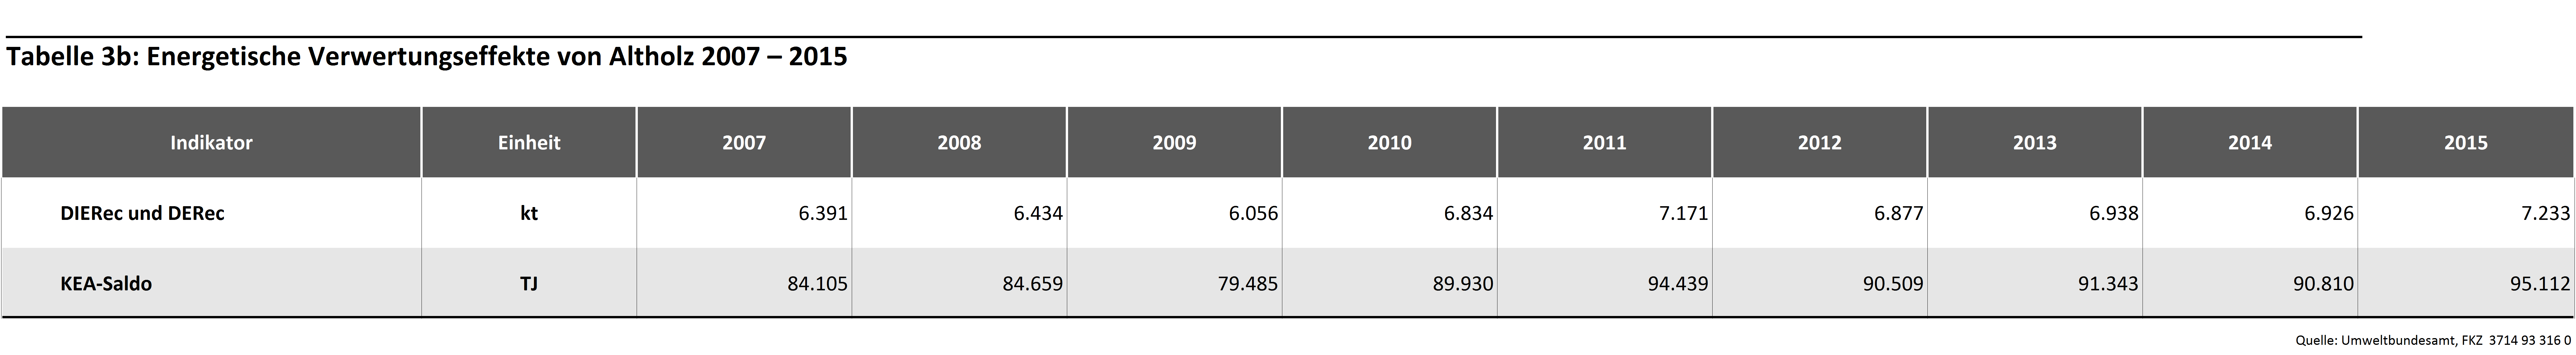 Tabelle 3b: Energetische Verwertungseffekte von Altholz 2007-2015